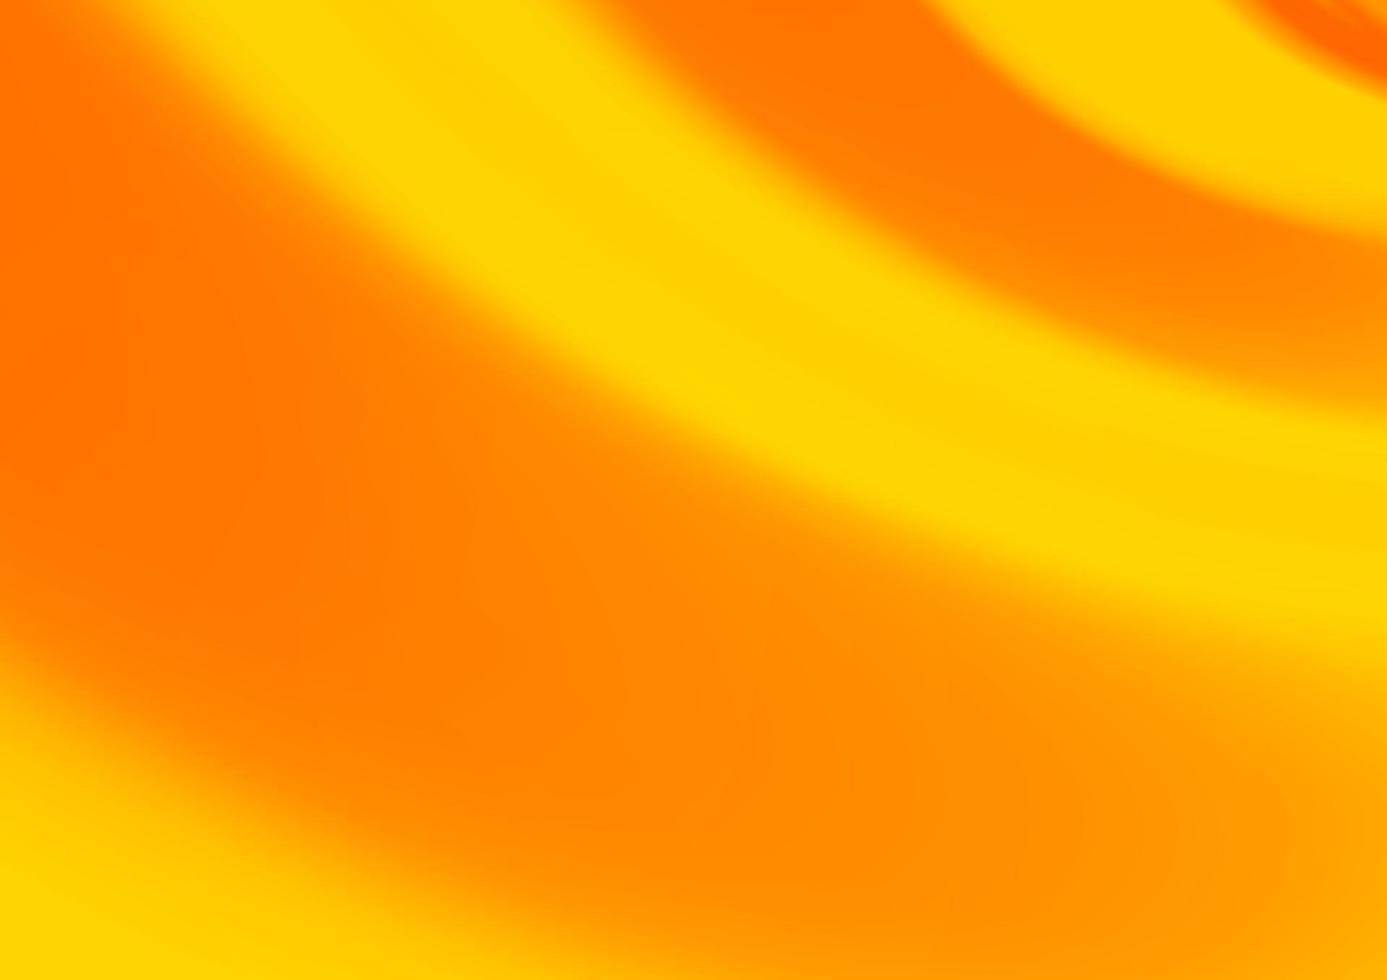 modello luminoso sfocato vettoriale arancione chiaro.